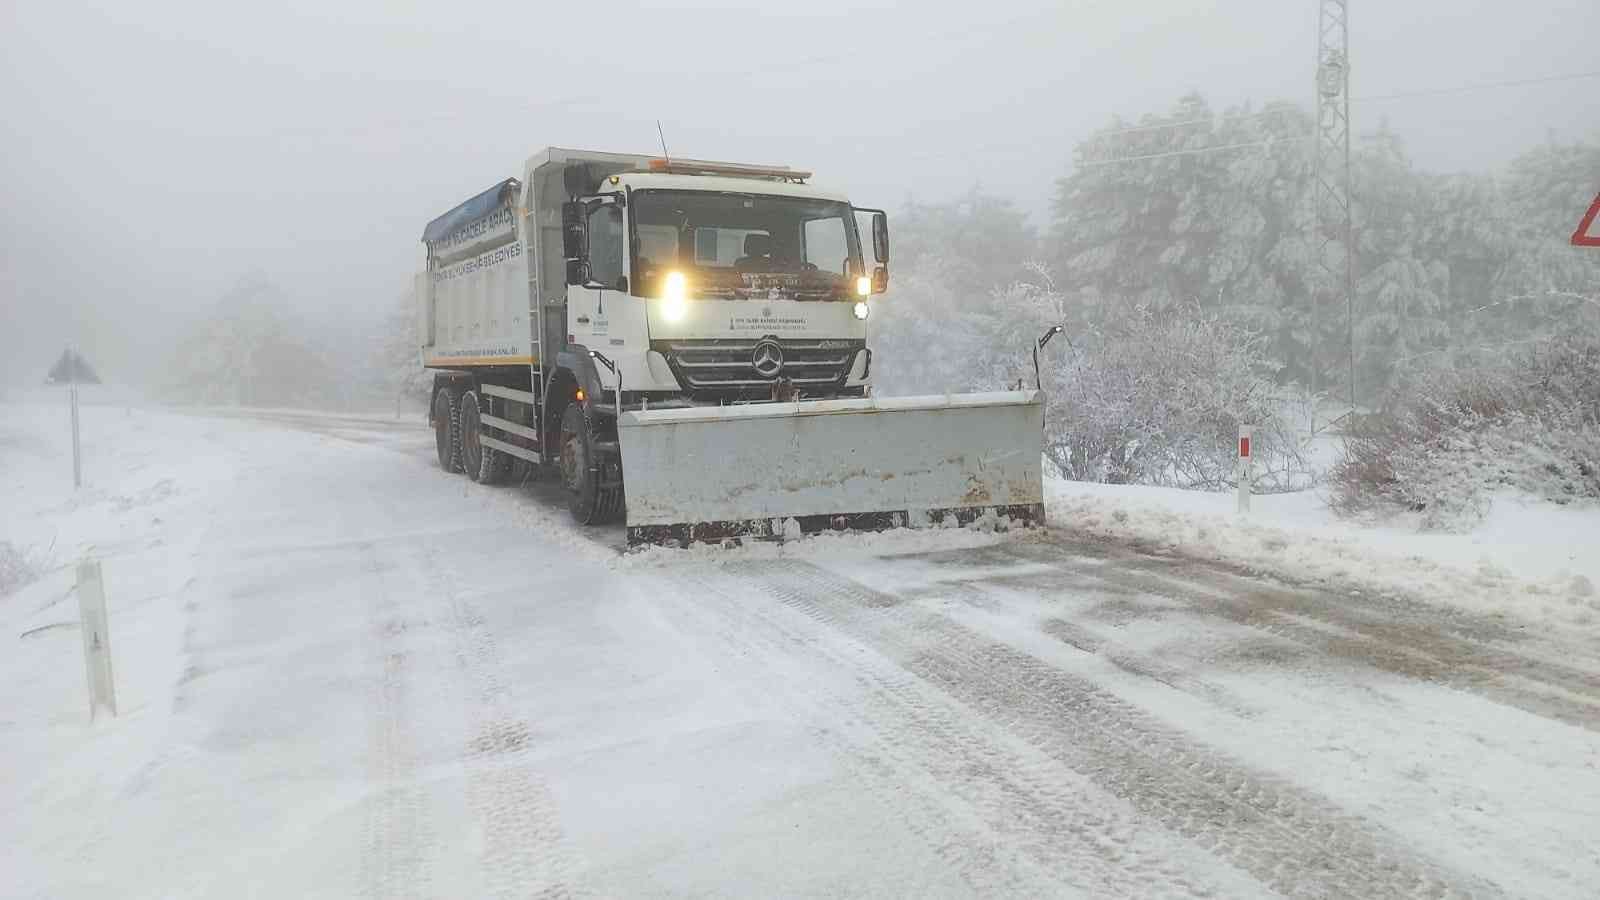 İzmir’de karla mücadele çalışmaları başladı #izmir